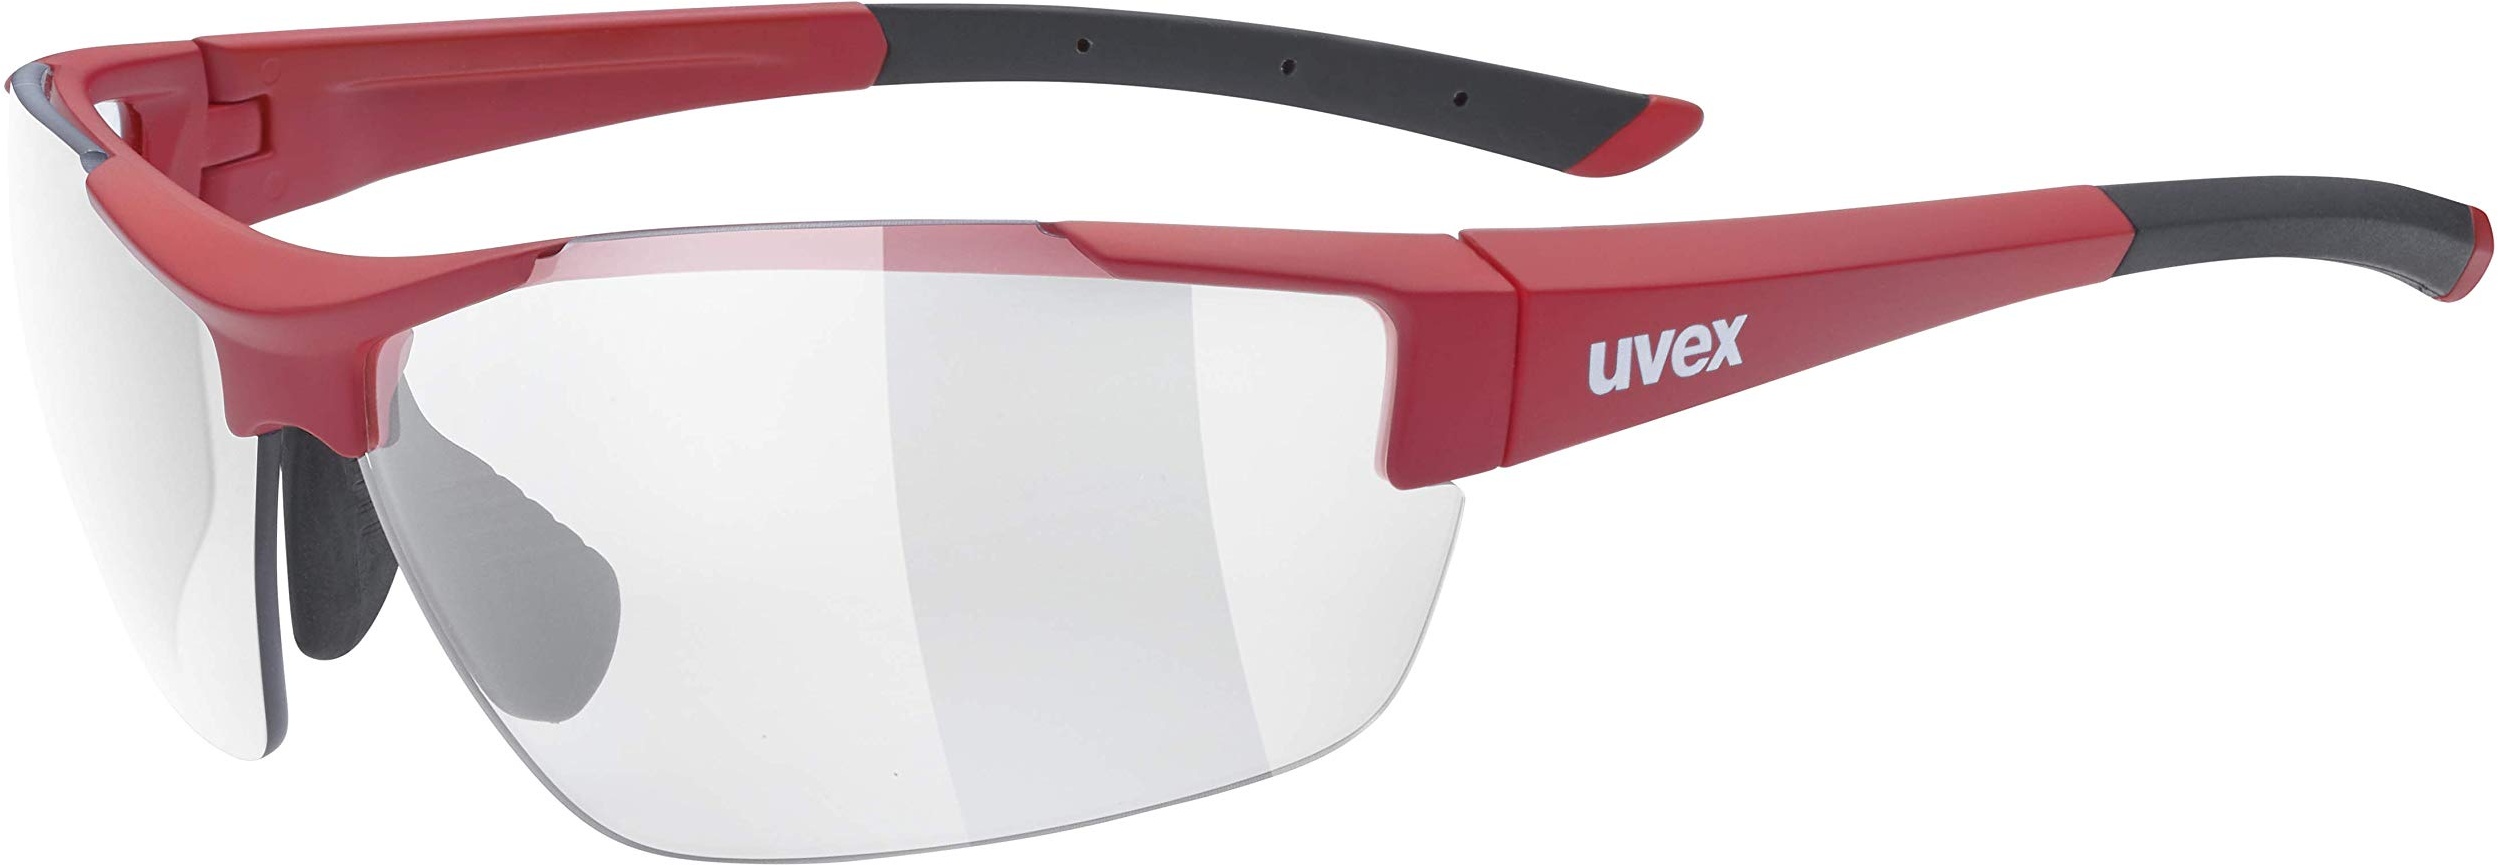 uvex sportstyle 612 VL - Sportbrille für Damen und Herren - selbsttönend - druckfreier Tragekomfort & perfekter Halt - red matt/smoke - one size